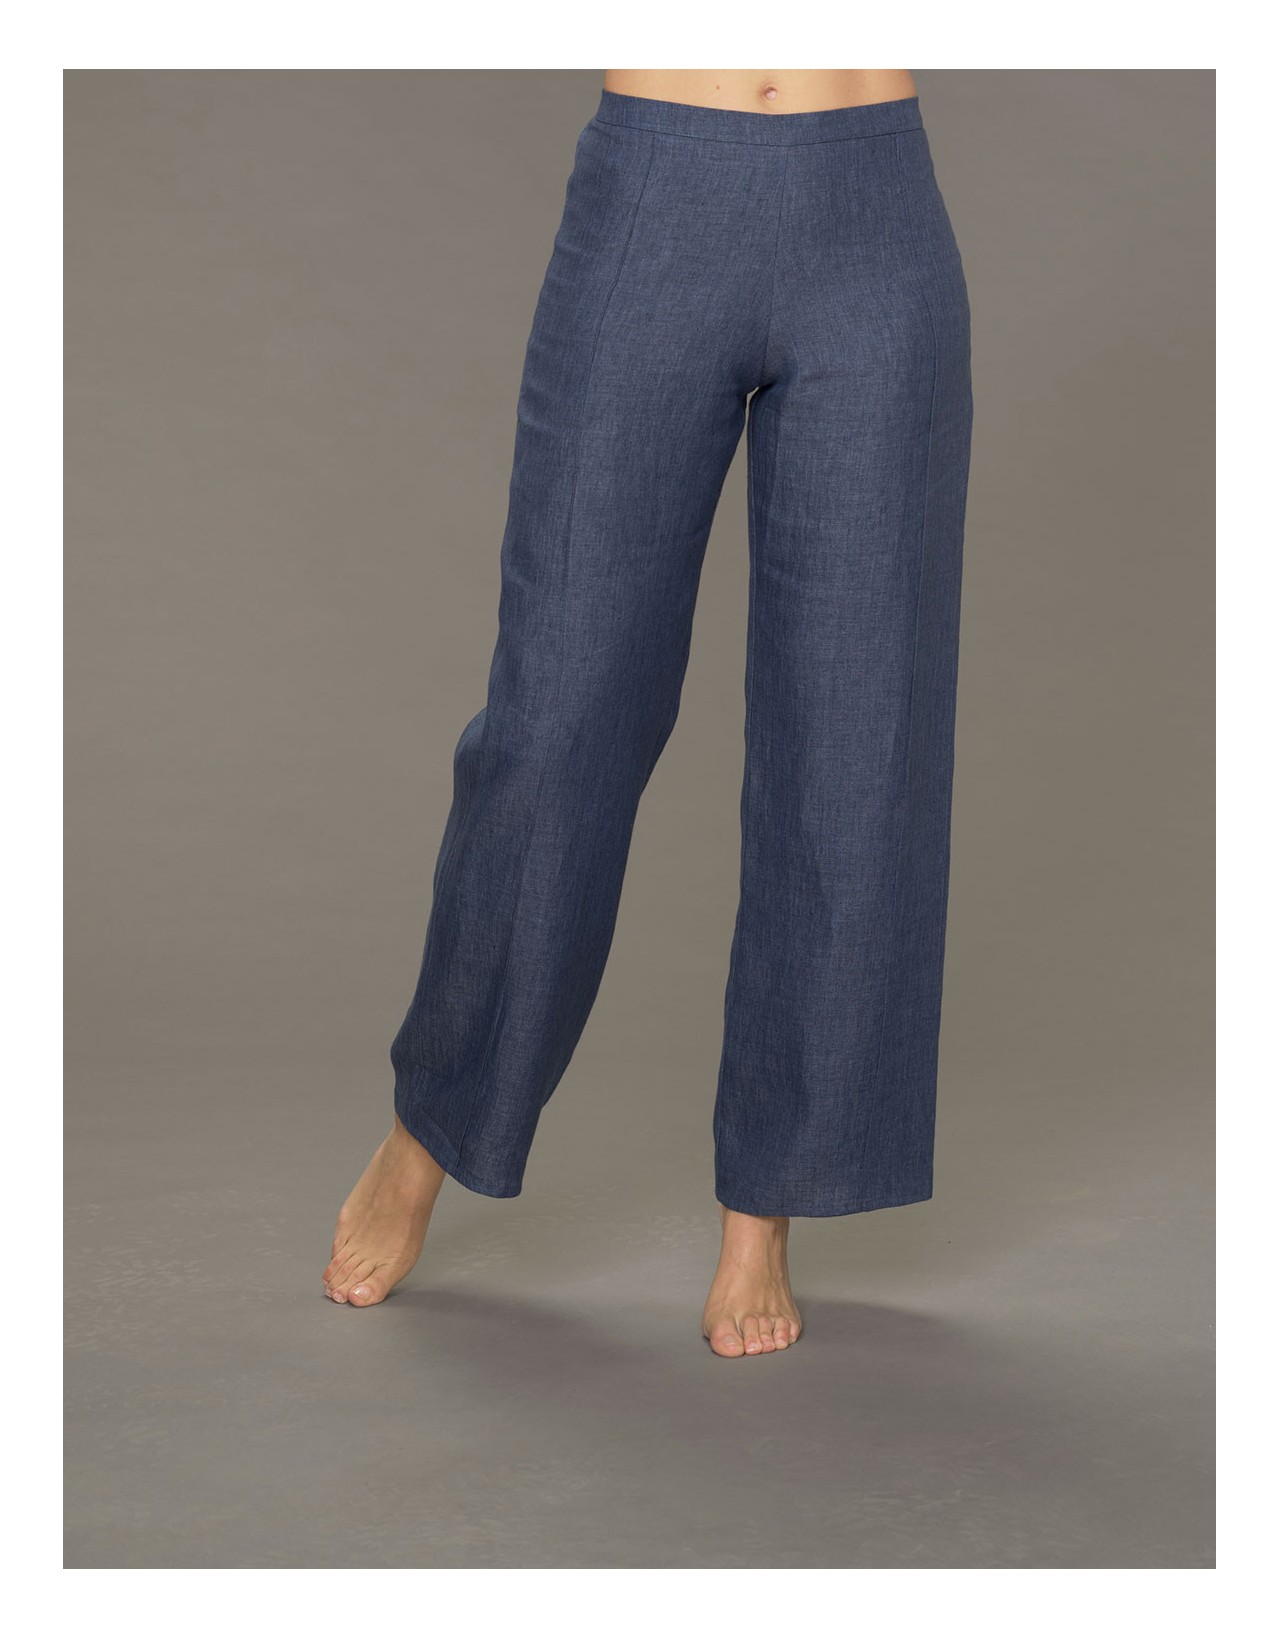 Pantalon Eden surpiqué en lin bleu jean